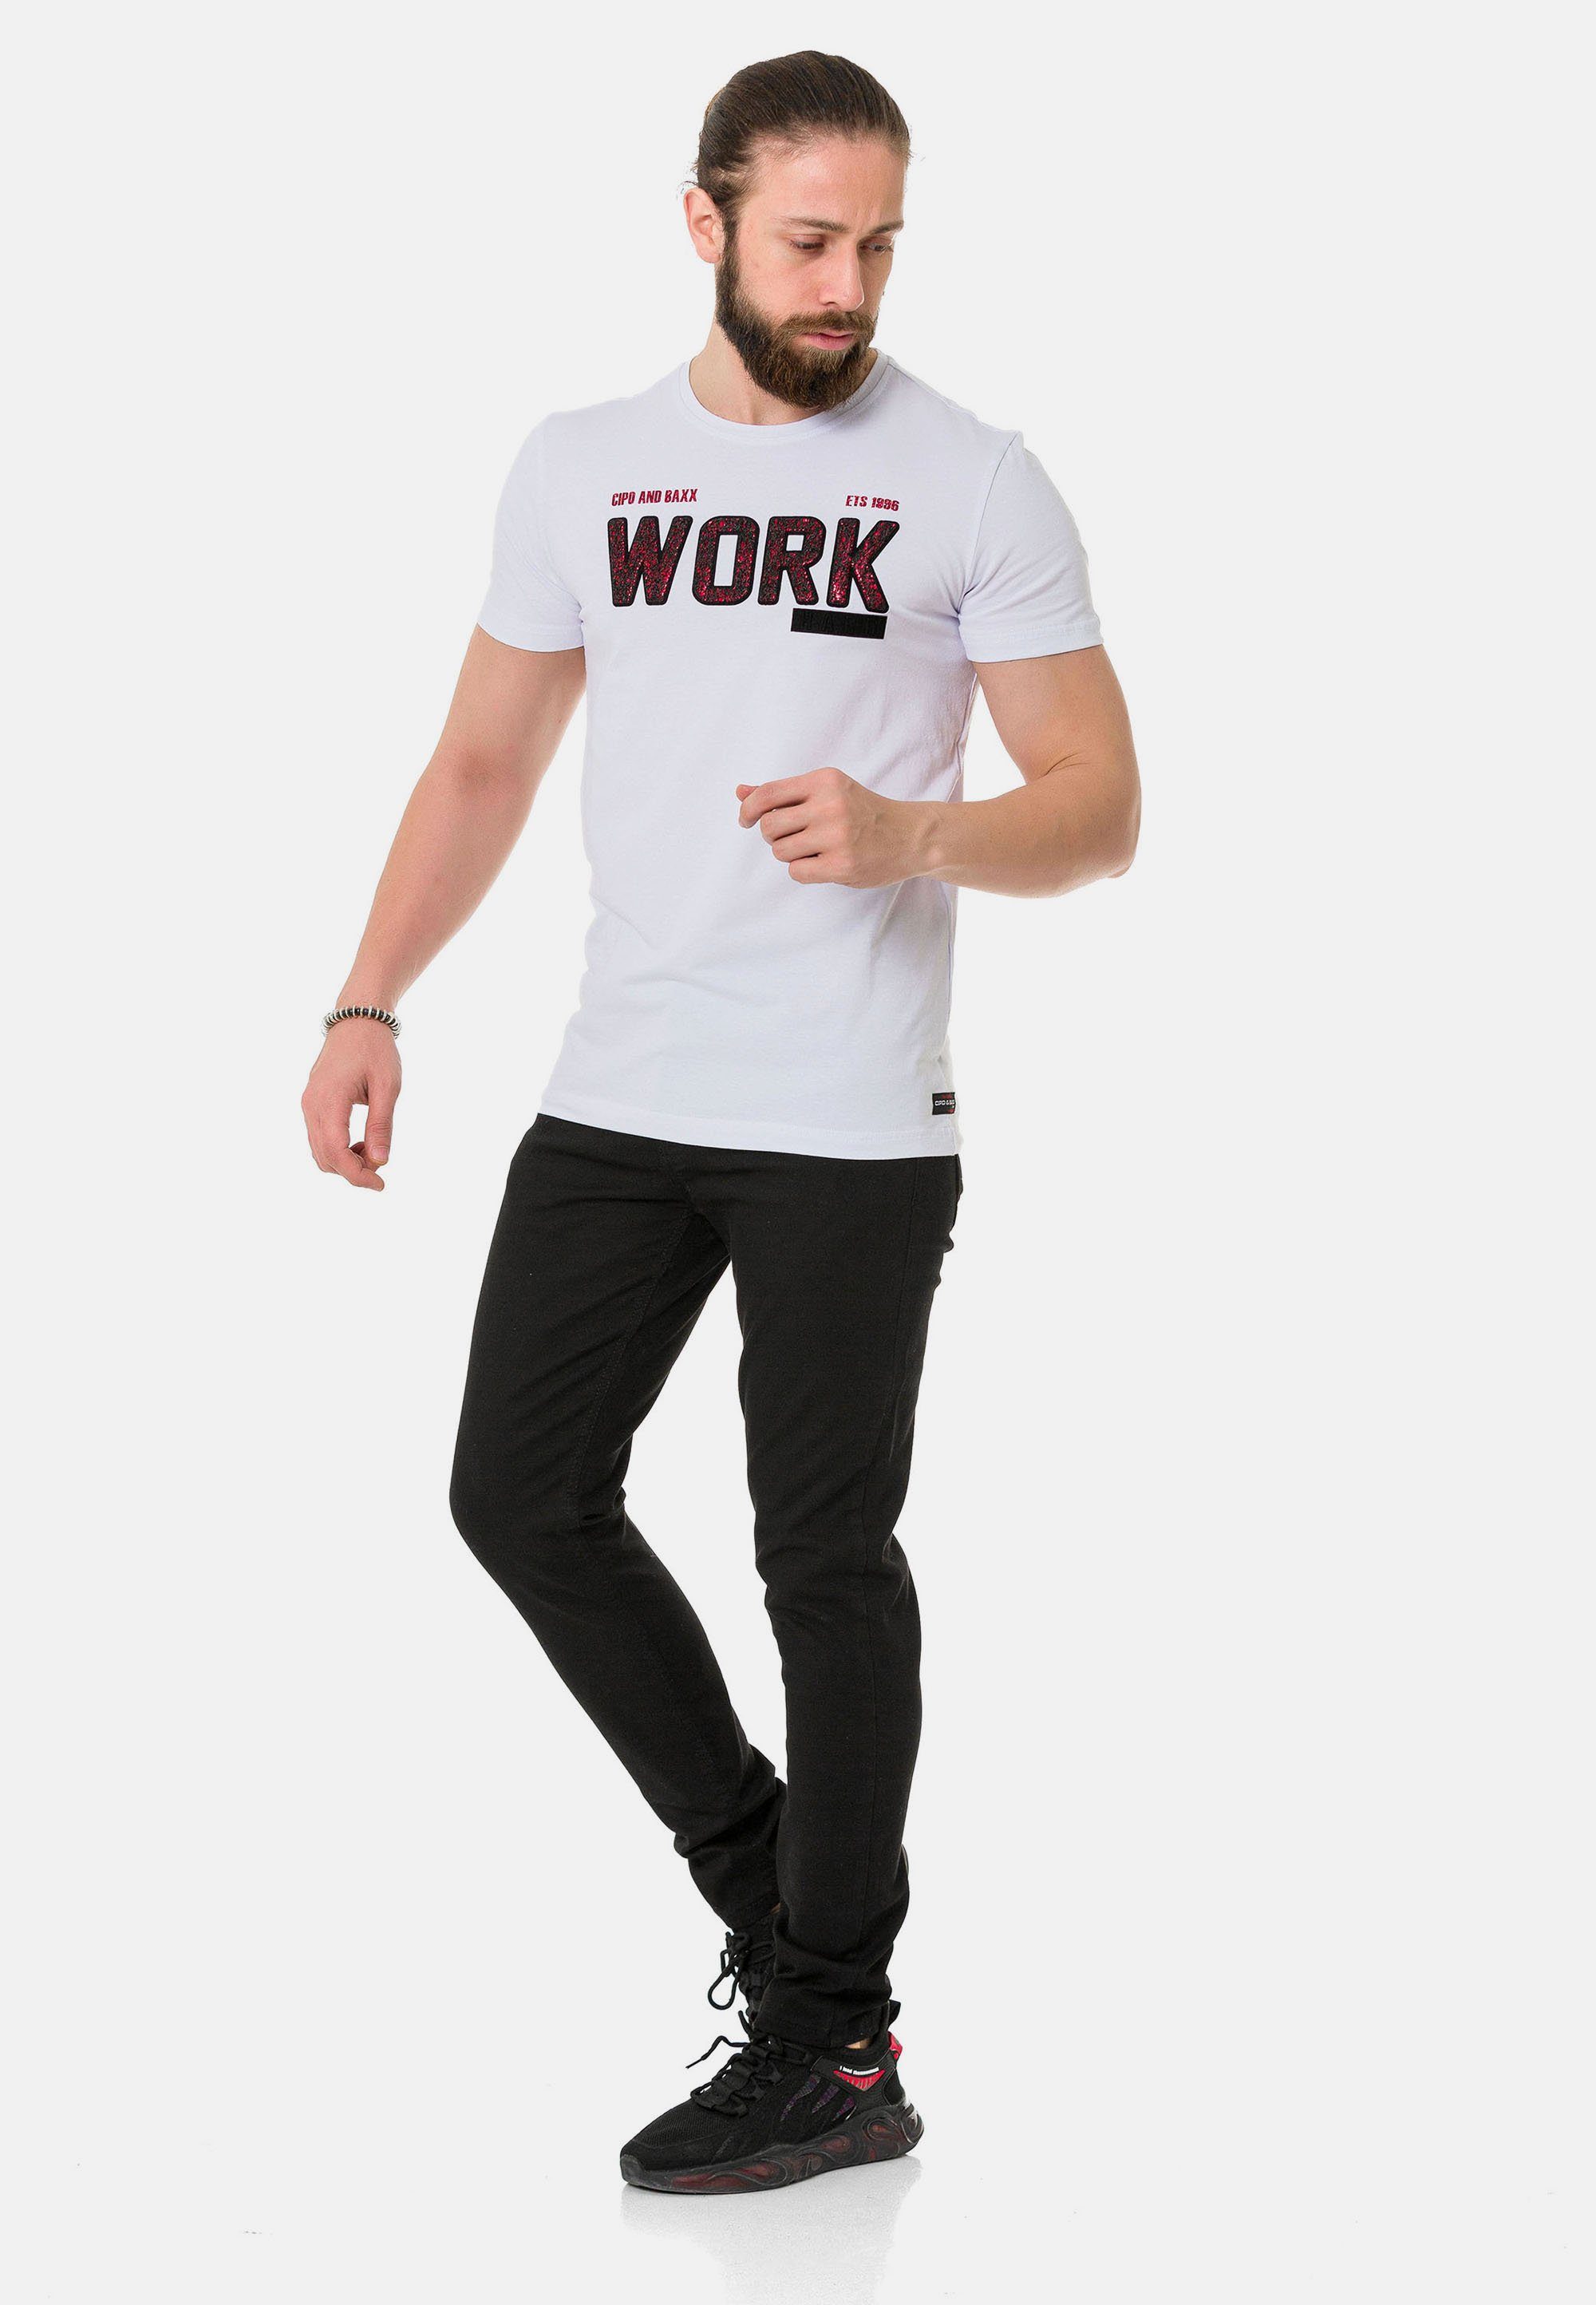 Work-Aufdruck coolem mit Cipo & weiß Baxx T-Shirt